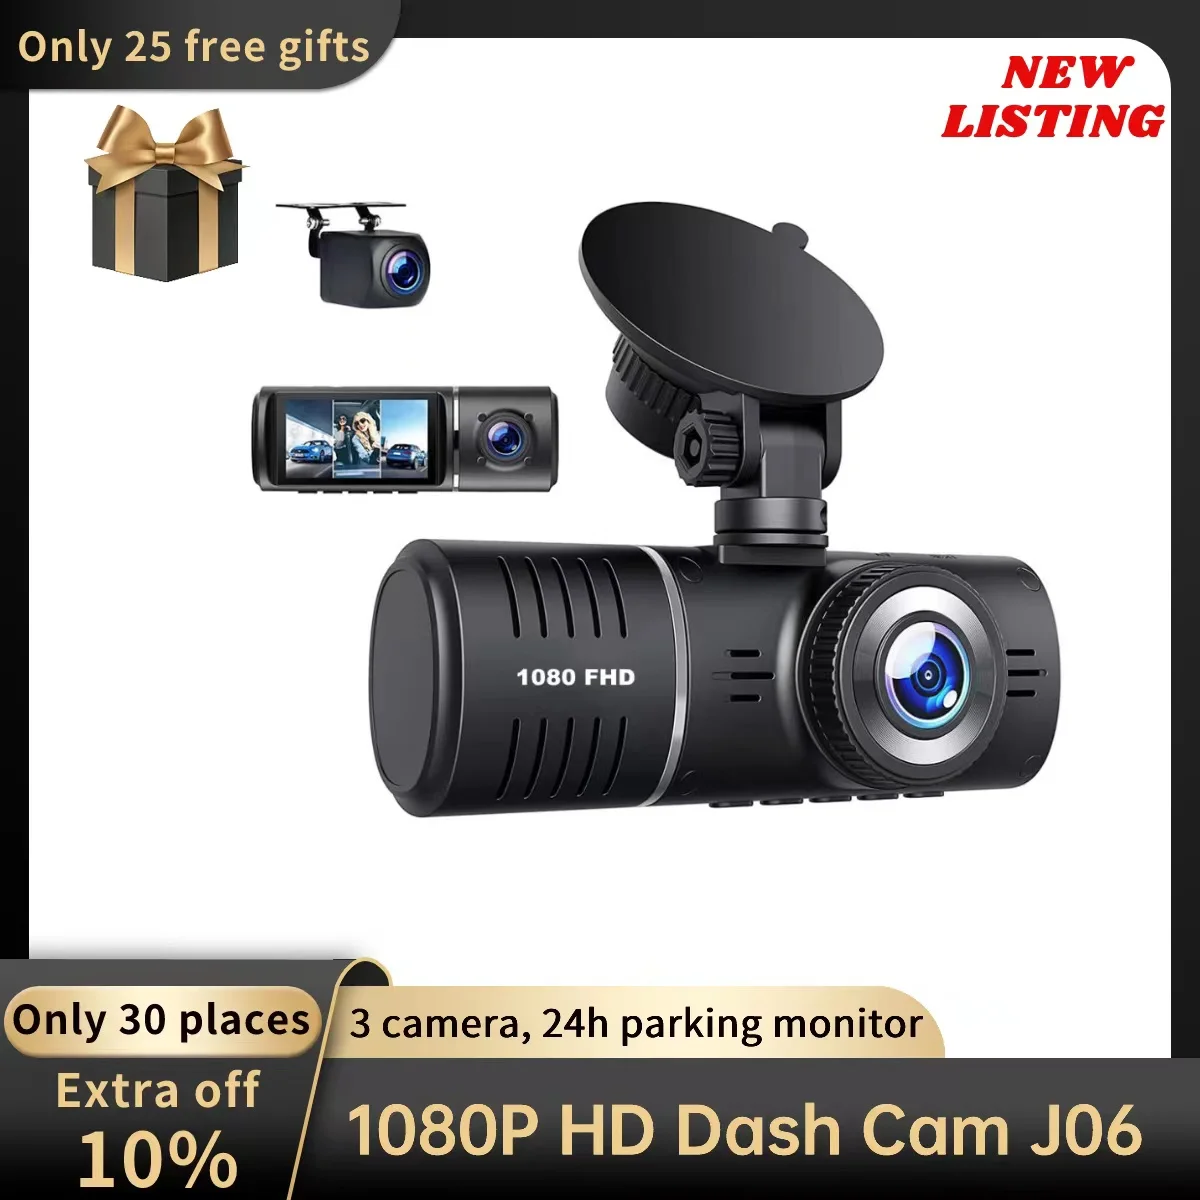 J06 Dash Cam For Car 1080P 3 Lens Car Camera Recorder G-Sensor Dashcam 24H Parking Monitor 170°FOV dvr Rear View Camera For Car